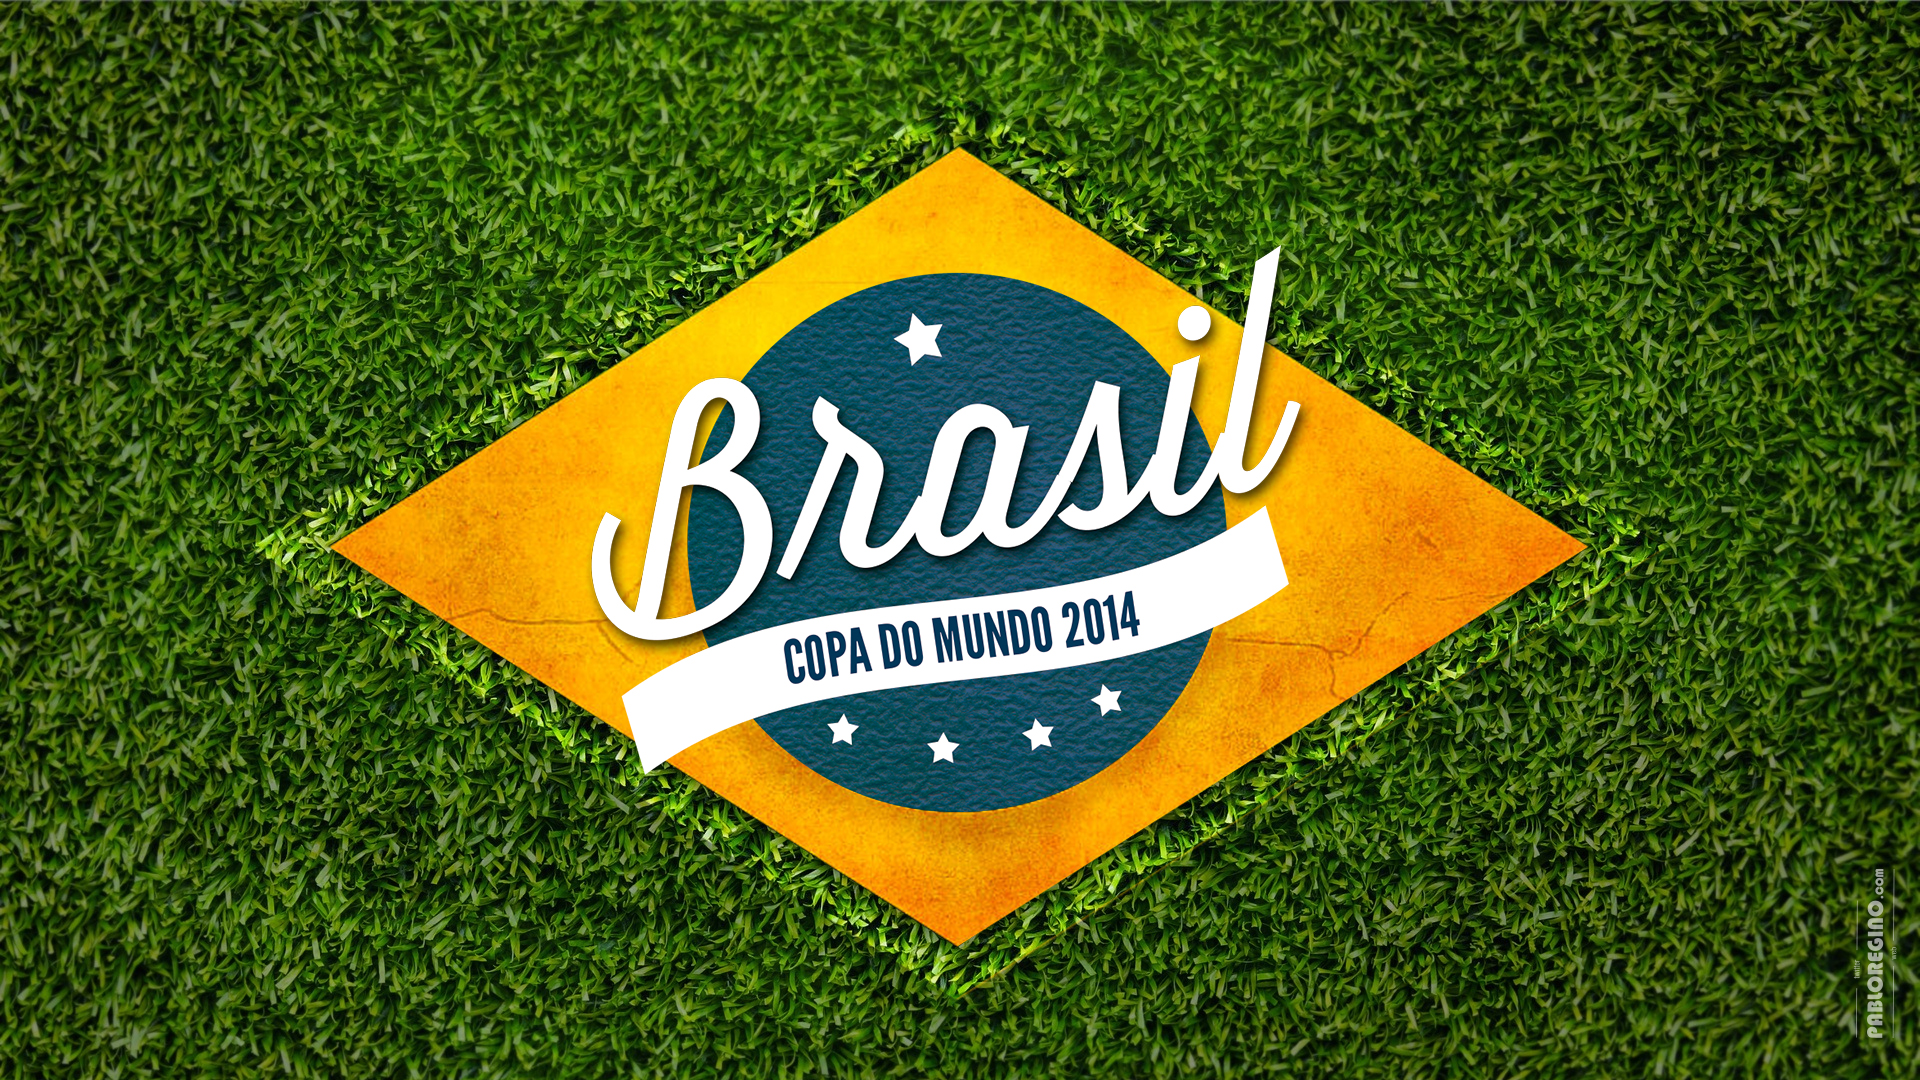 fifa world cup, sports, fifa world cup brazil 2014, brasil 2014, fifa